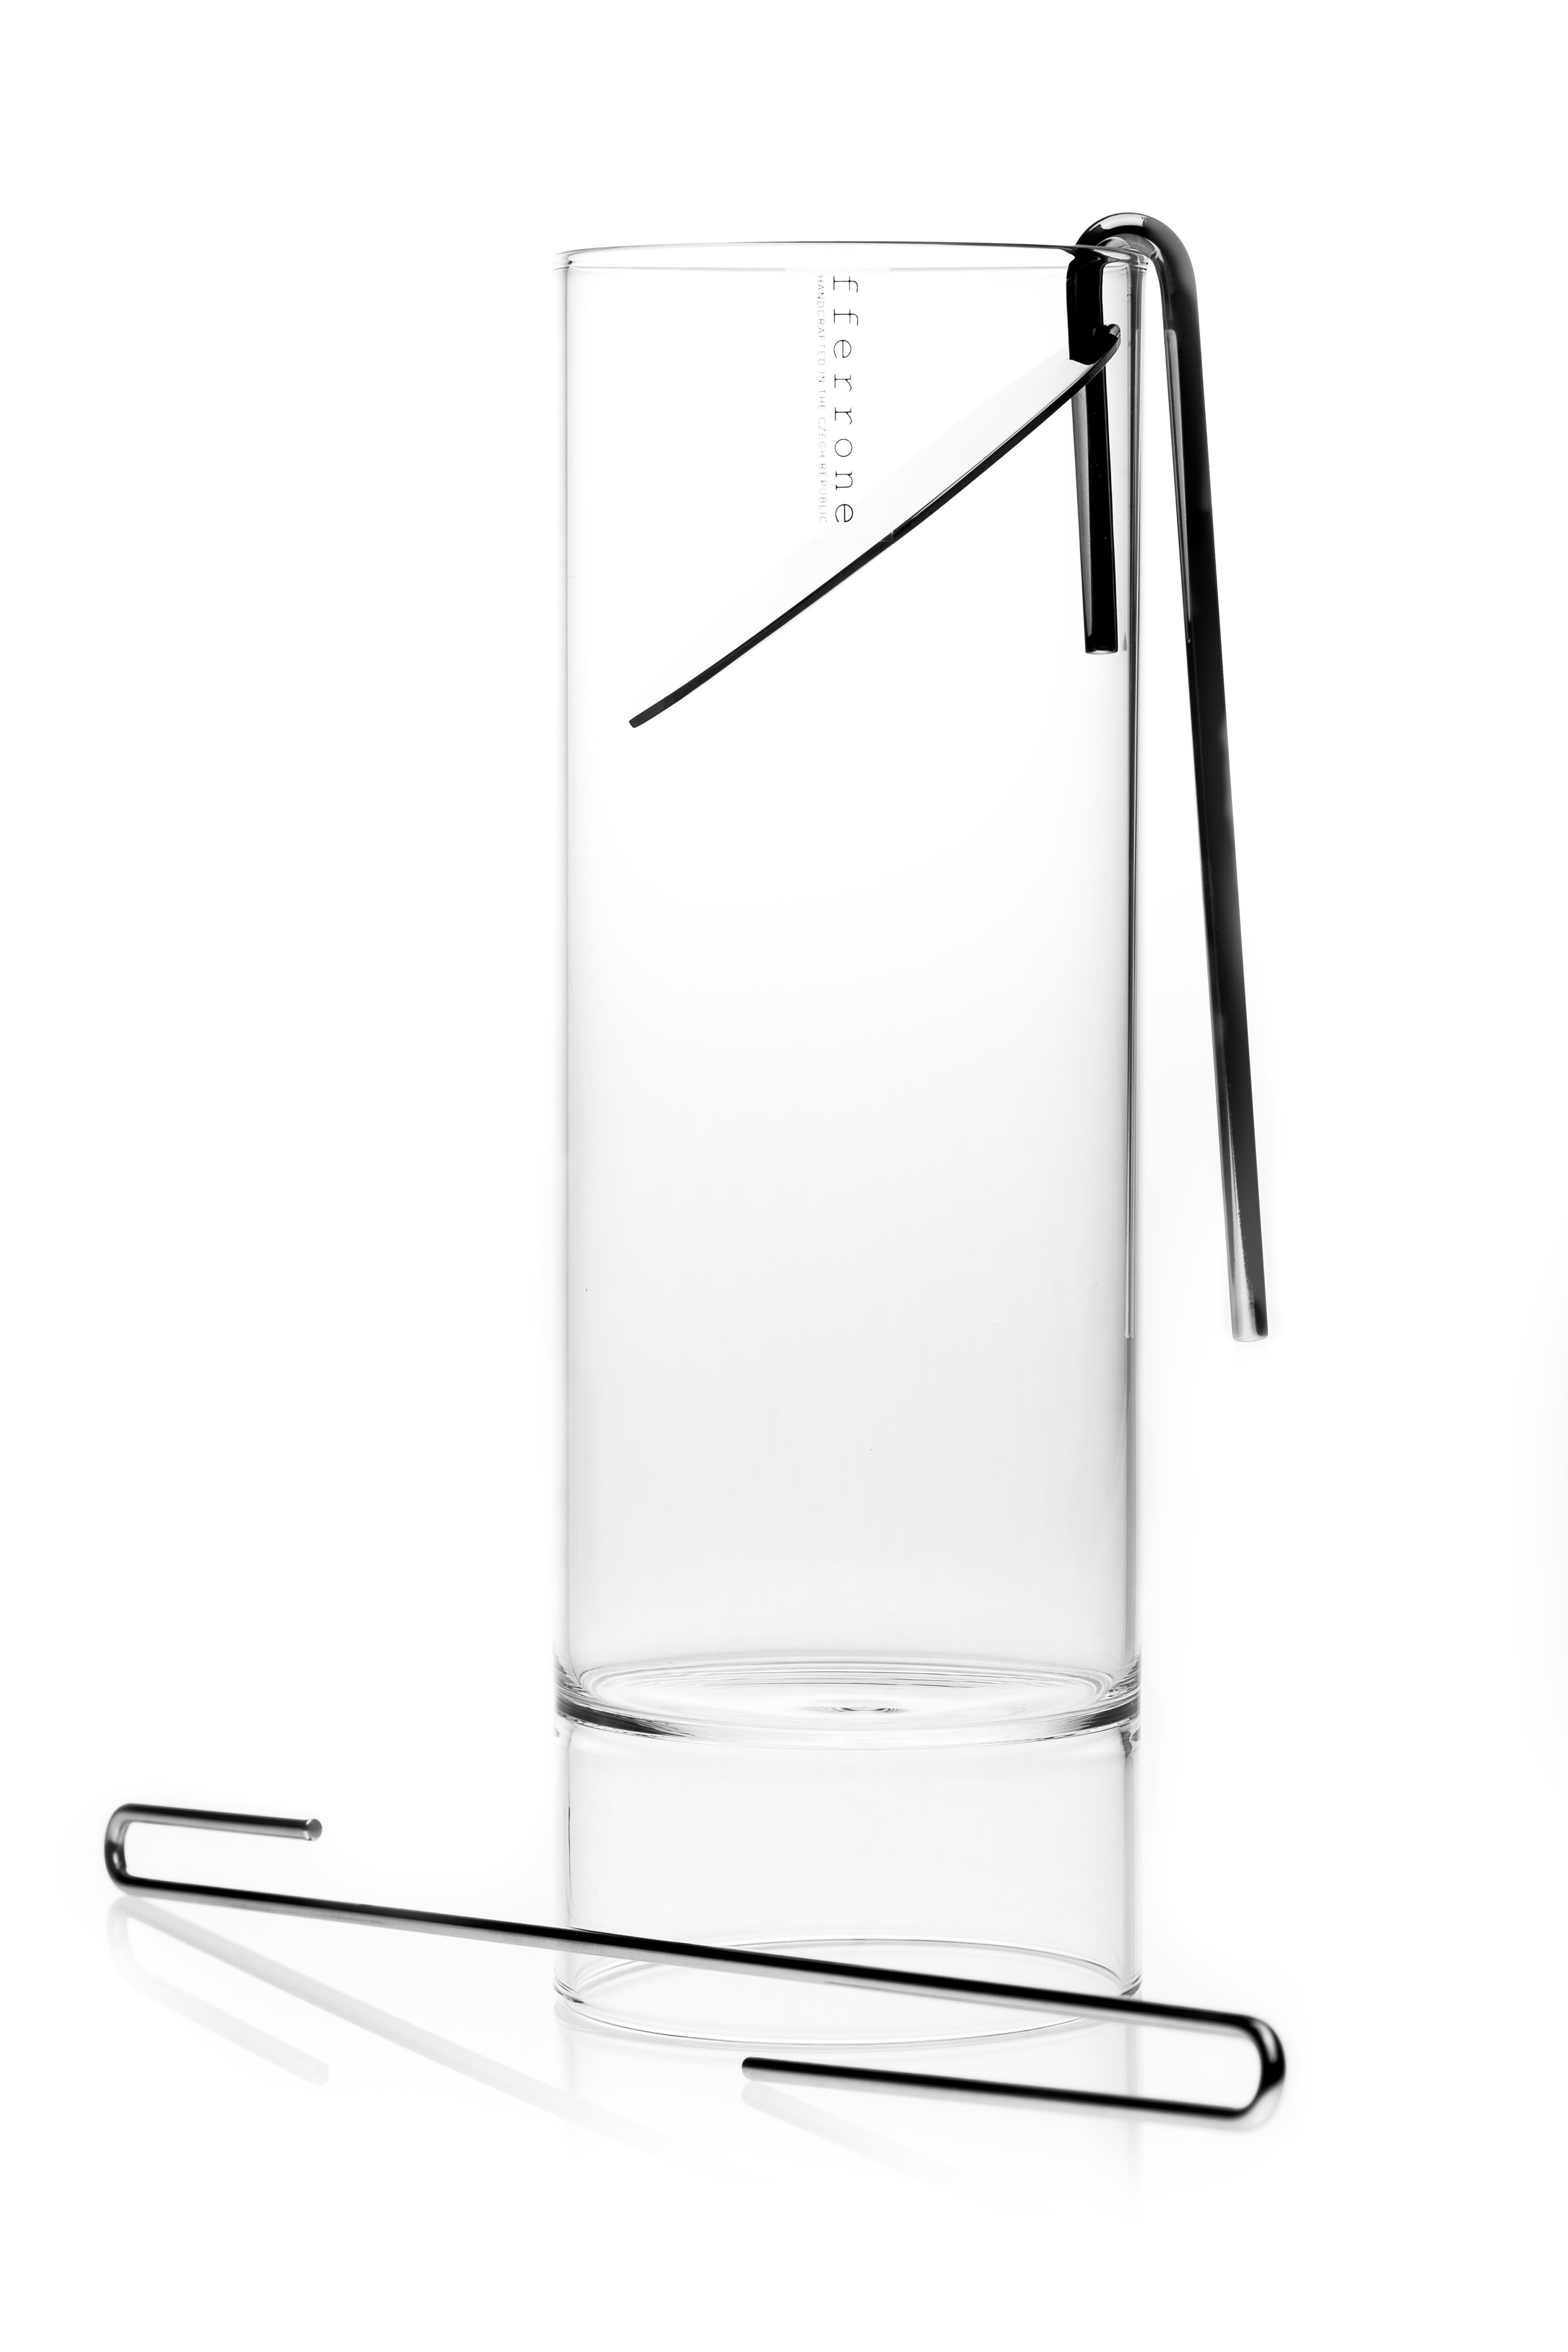 L'ensemble de la collection minimale Revolution en verre tchèque contemporain comprend une carafe à cocktail, une passoire, un bâtonnet mélangeur et six verres à liqueur à double extrémité.

D'une simplicité frappante dans sa forme, la collection